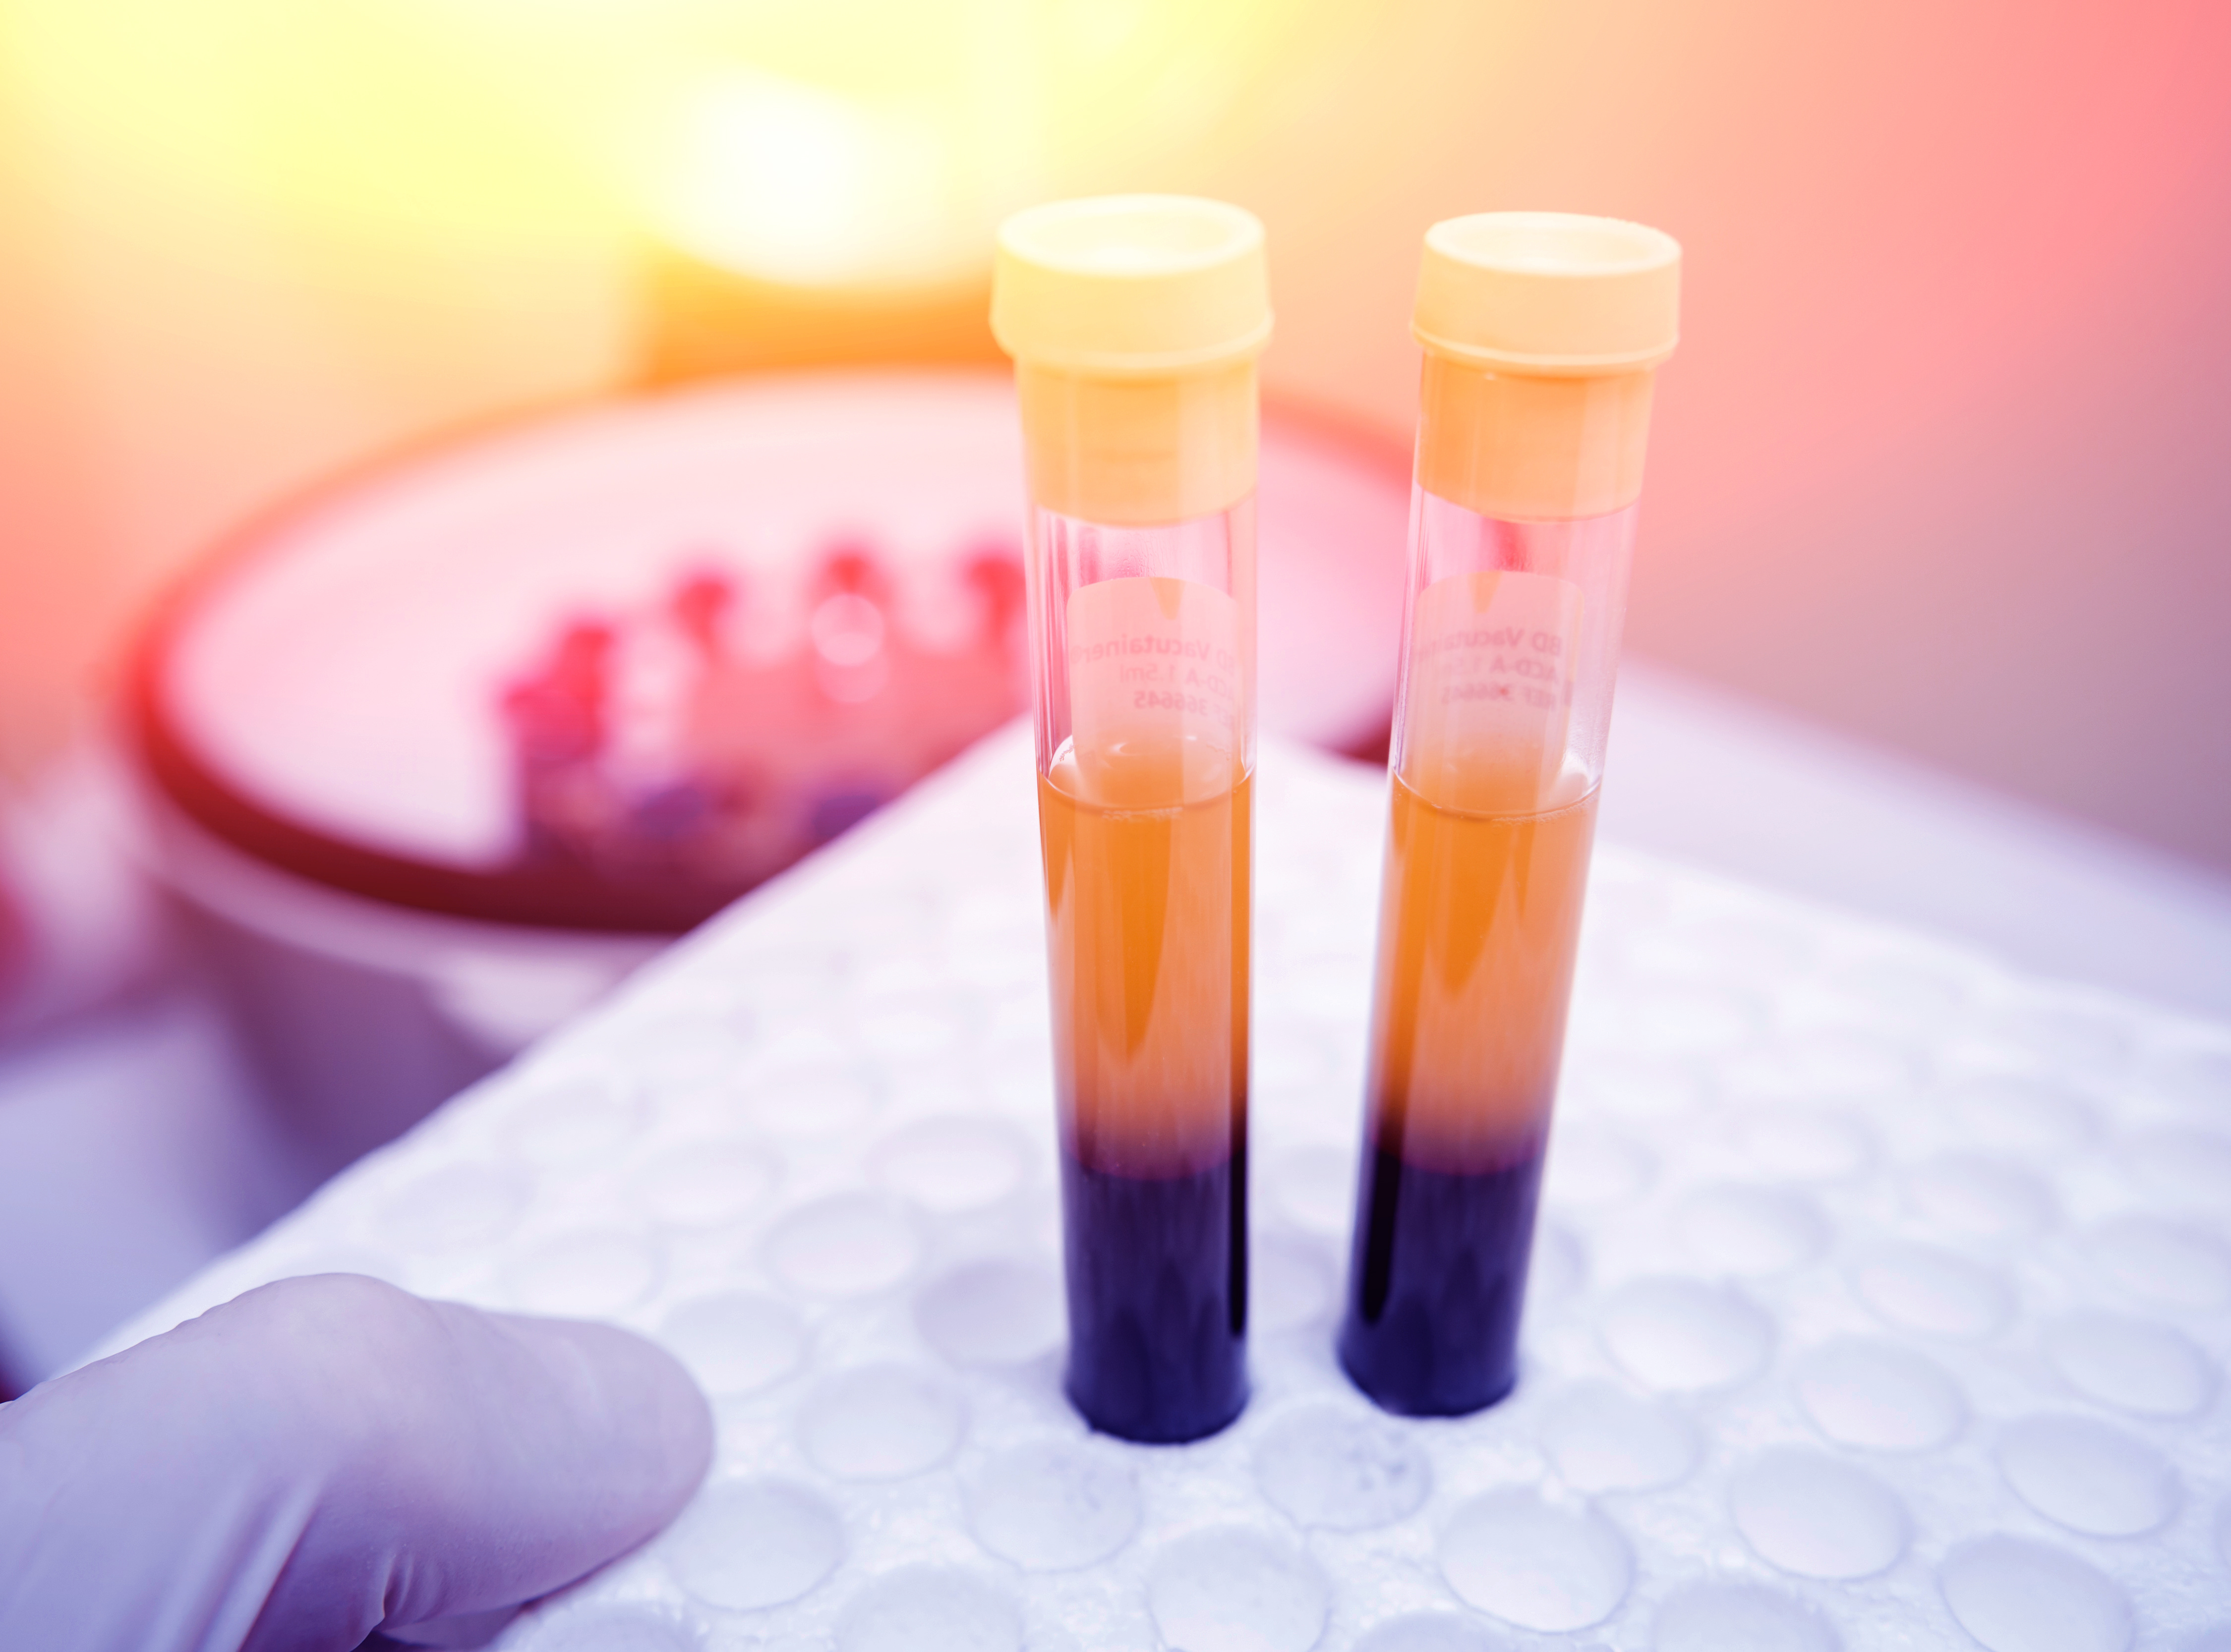 La biopsie liquide effectuée sur des échantillons de sérum sanguins permet aujourd’hui une détection plus précoce de la récidive du cancer et apporte des données précieuses, complémentaires à celles des diagnostics standards (Visuel Adobe Stock 143663706)